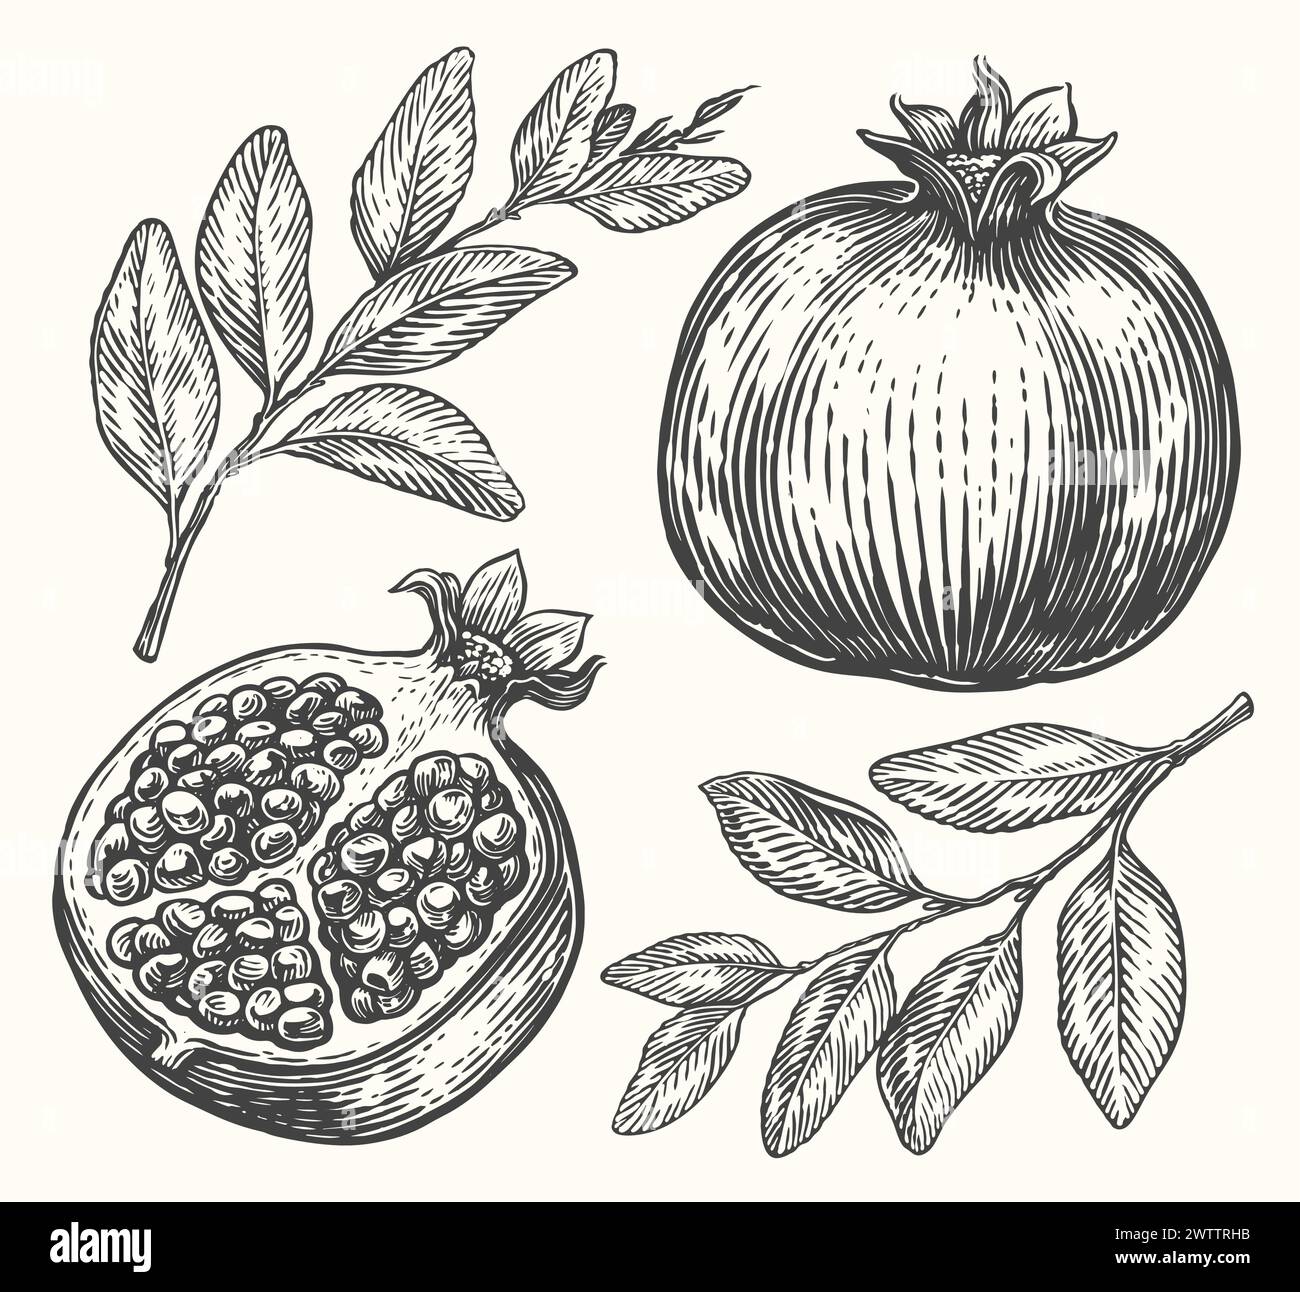 Granatapfelvektorzeichnung. Handgezeichnete Skizze mit tropischen Früchten. Gravierte Abbildung Stock Vektor